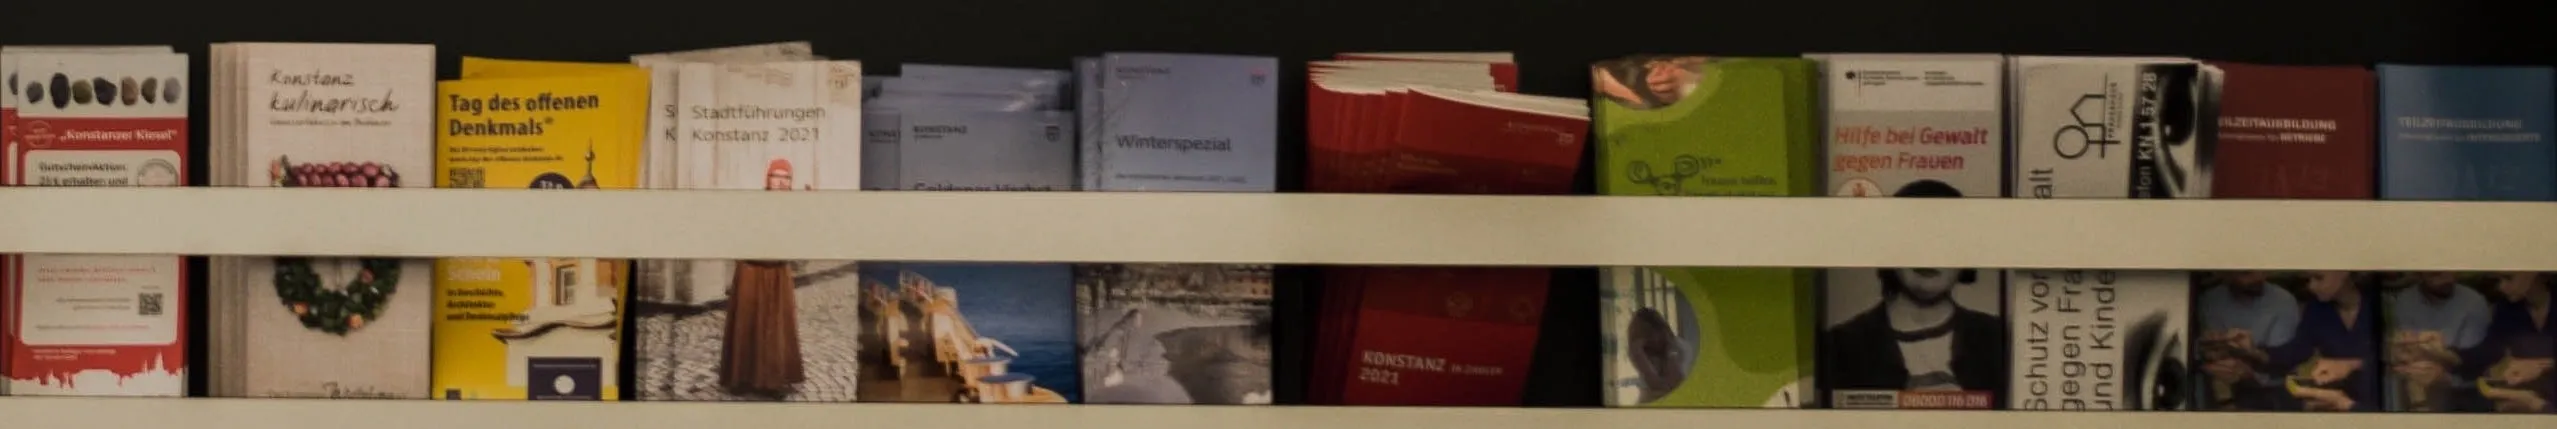 brochures on shelf